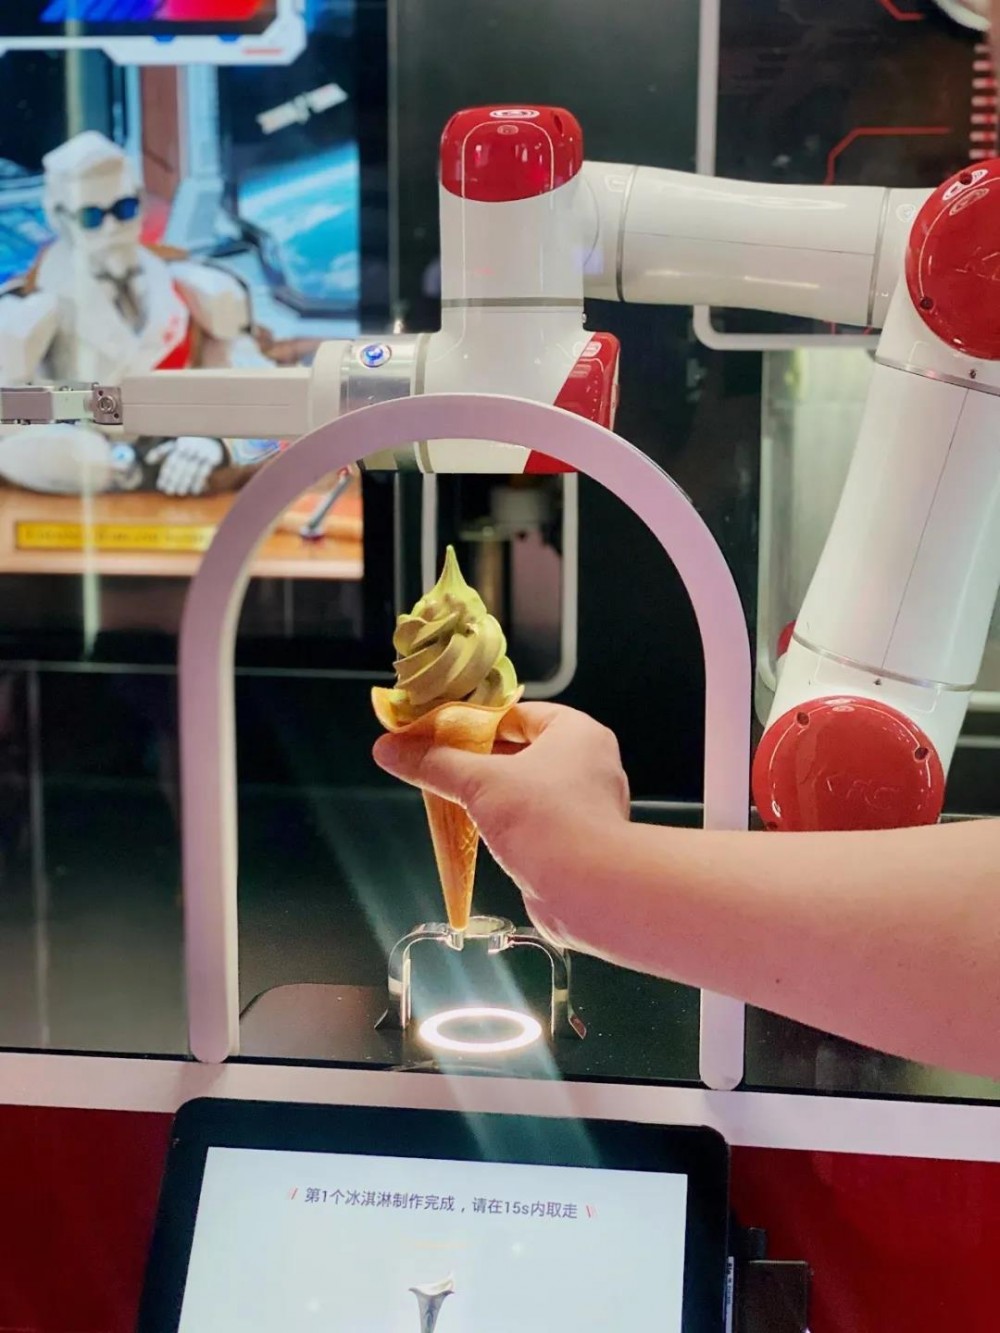 以上可爱的冰淇淋机器人,你猜它的名字是什么?